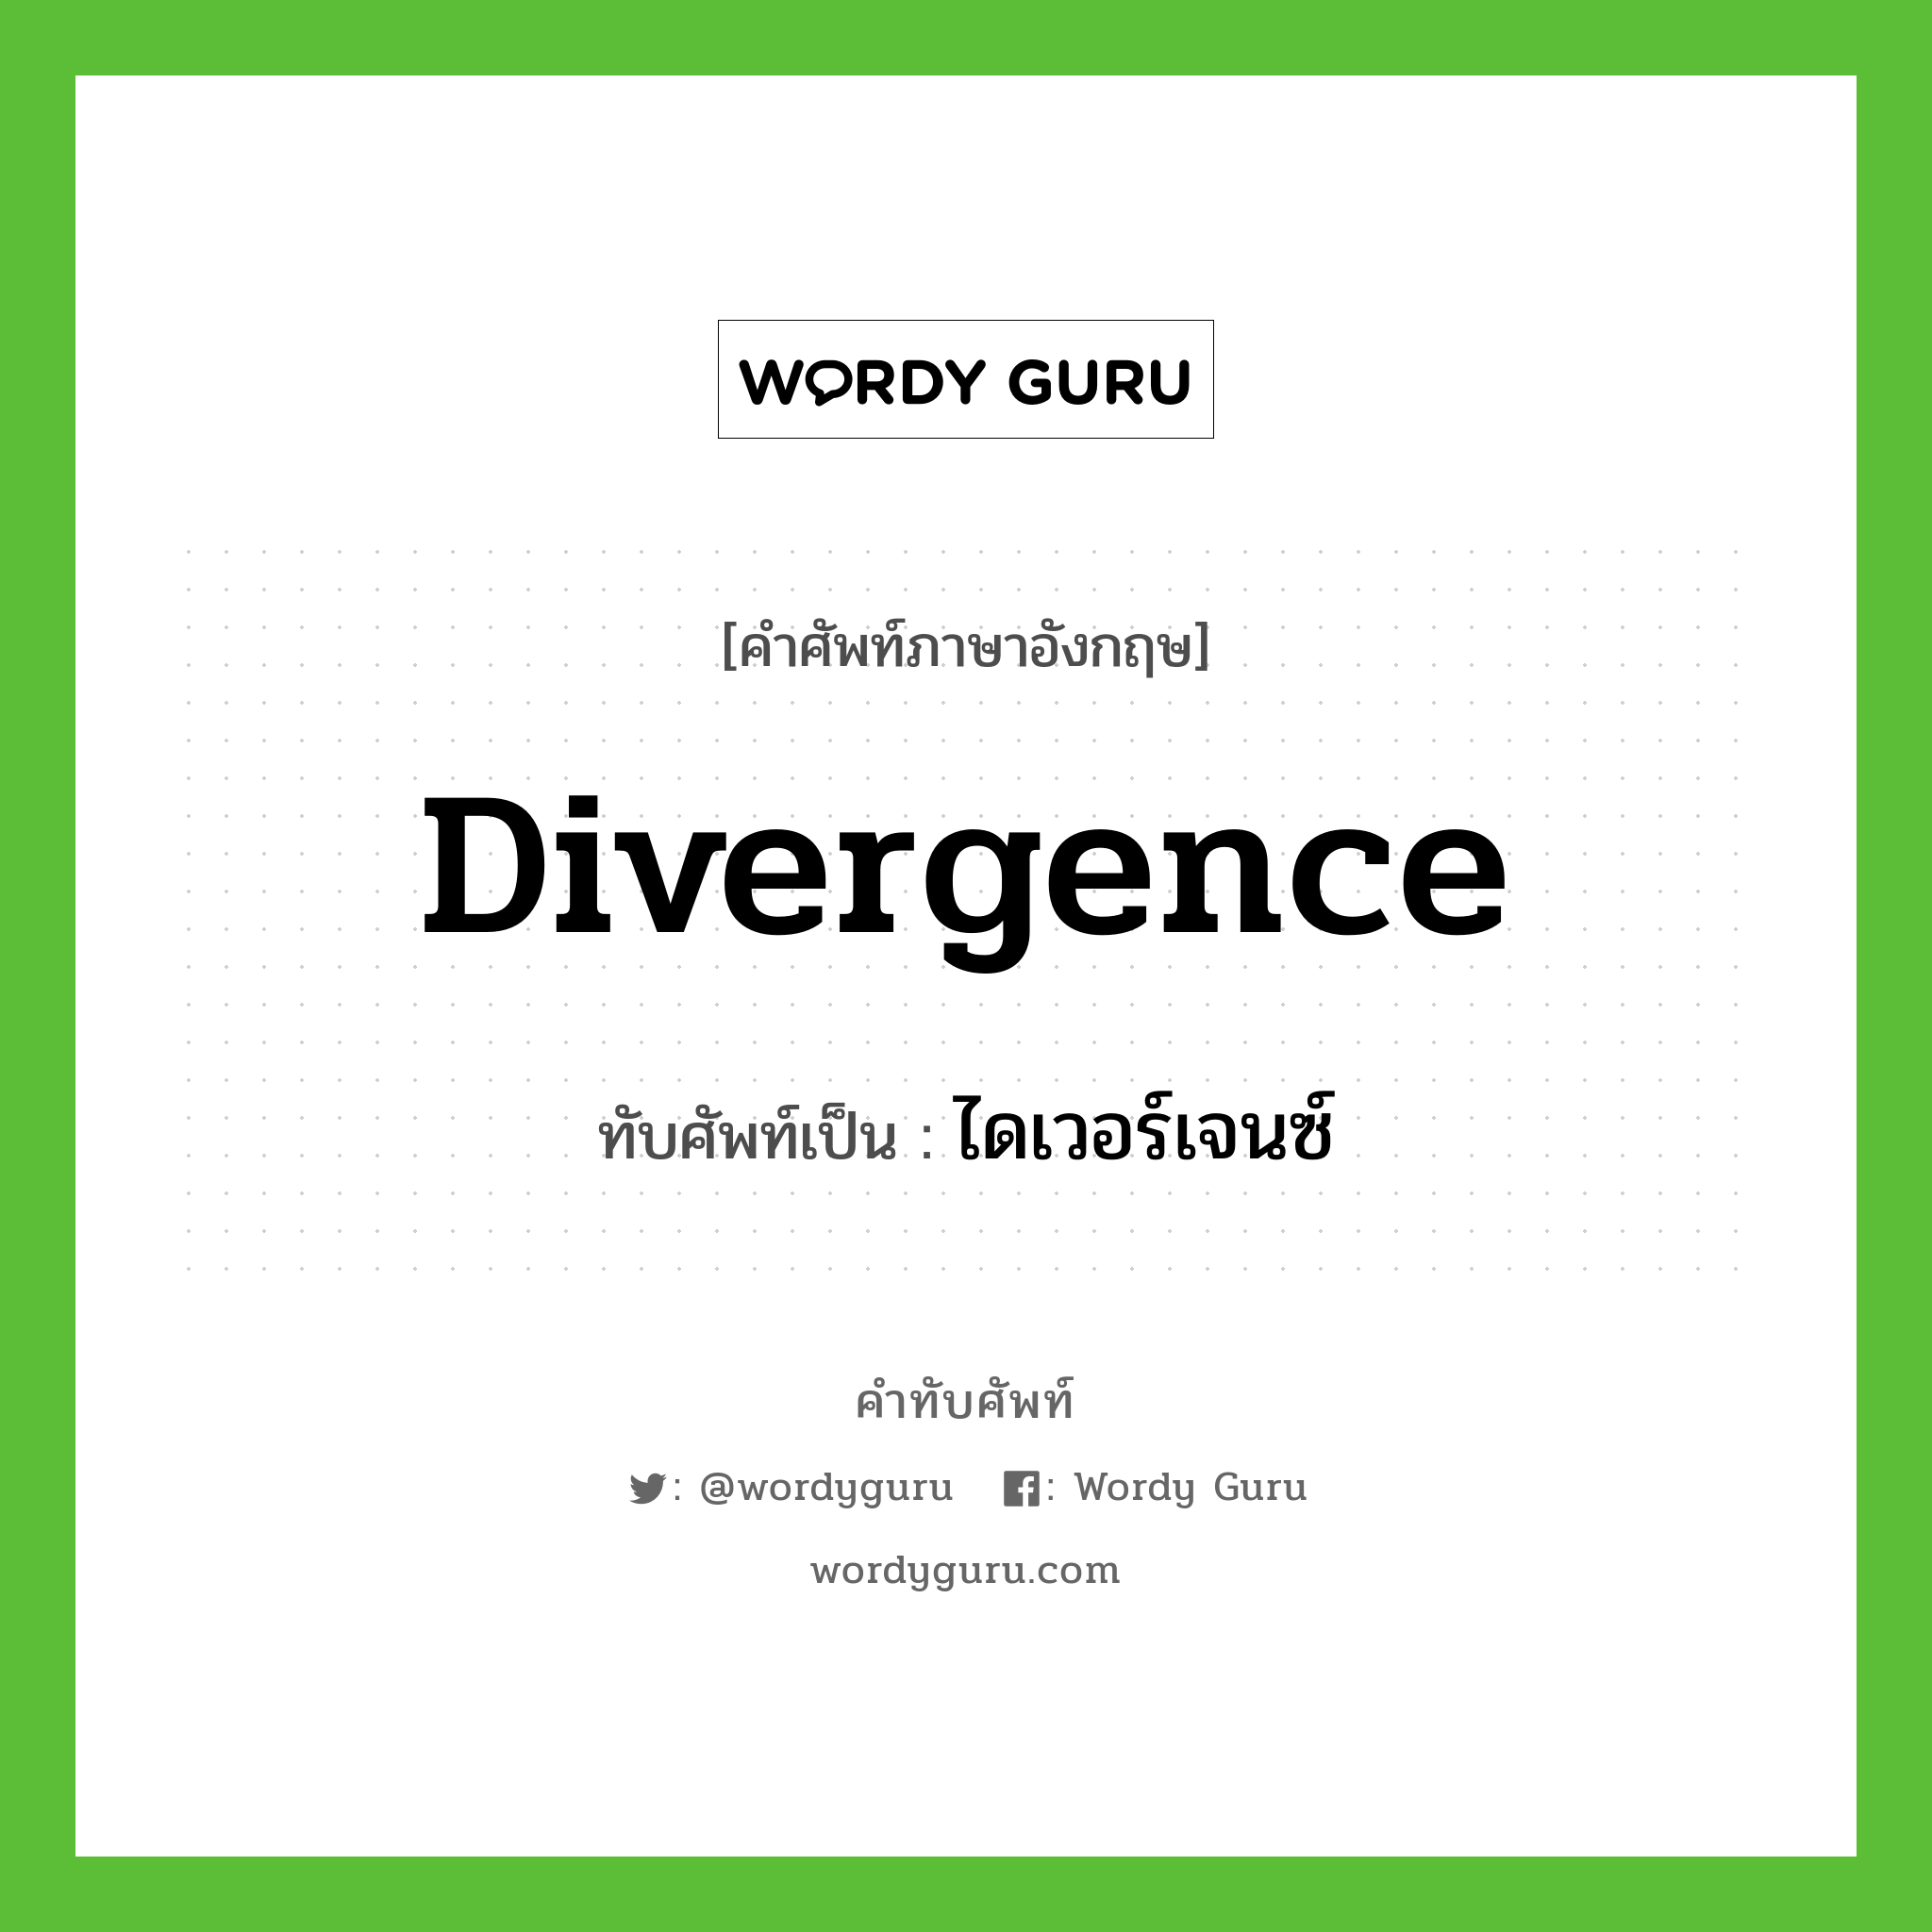 ไดเวอร์เจนซ์ เขียนอย่างไร?, คำศัพท์ภาษาอังกฤษ ไดเวอร์เจนซ์ ทับศัพท์เป็น divergence